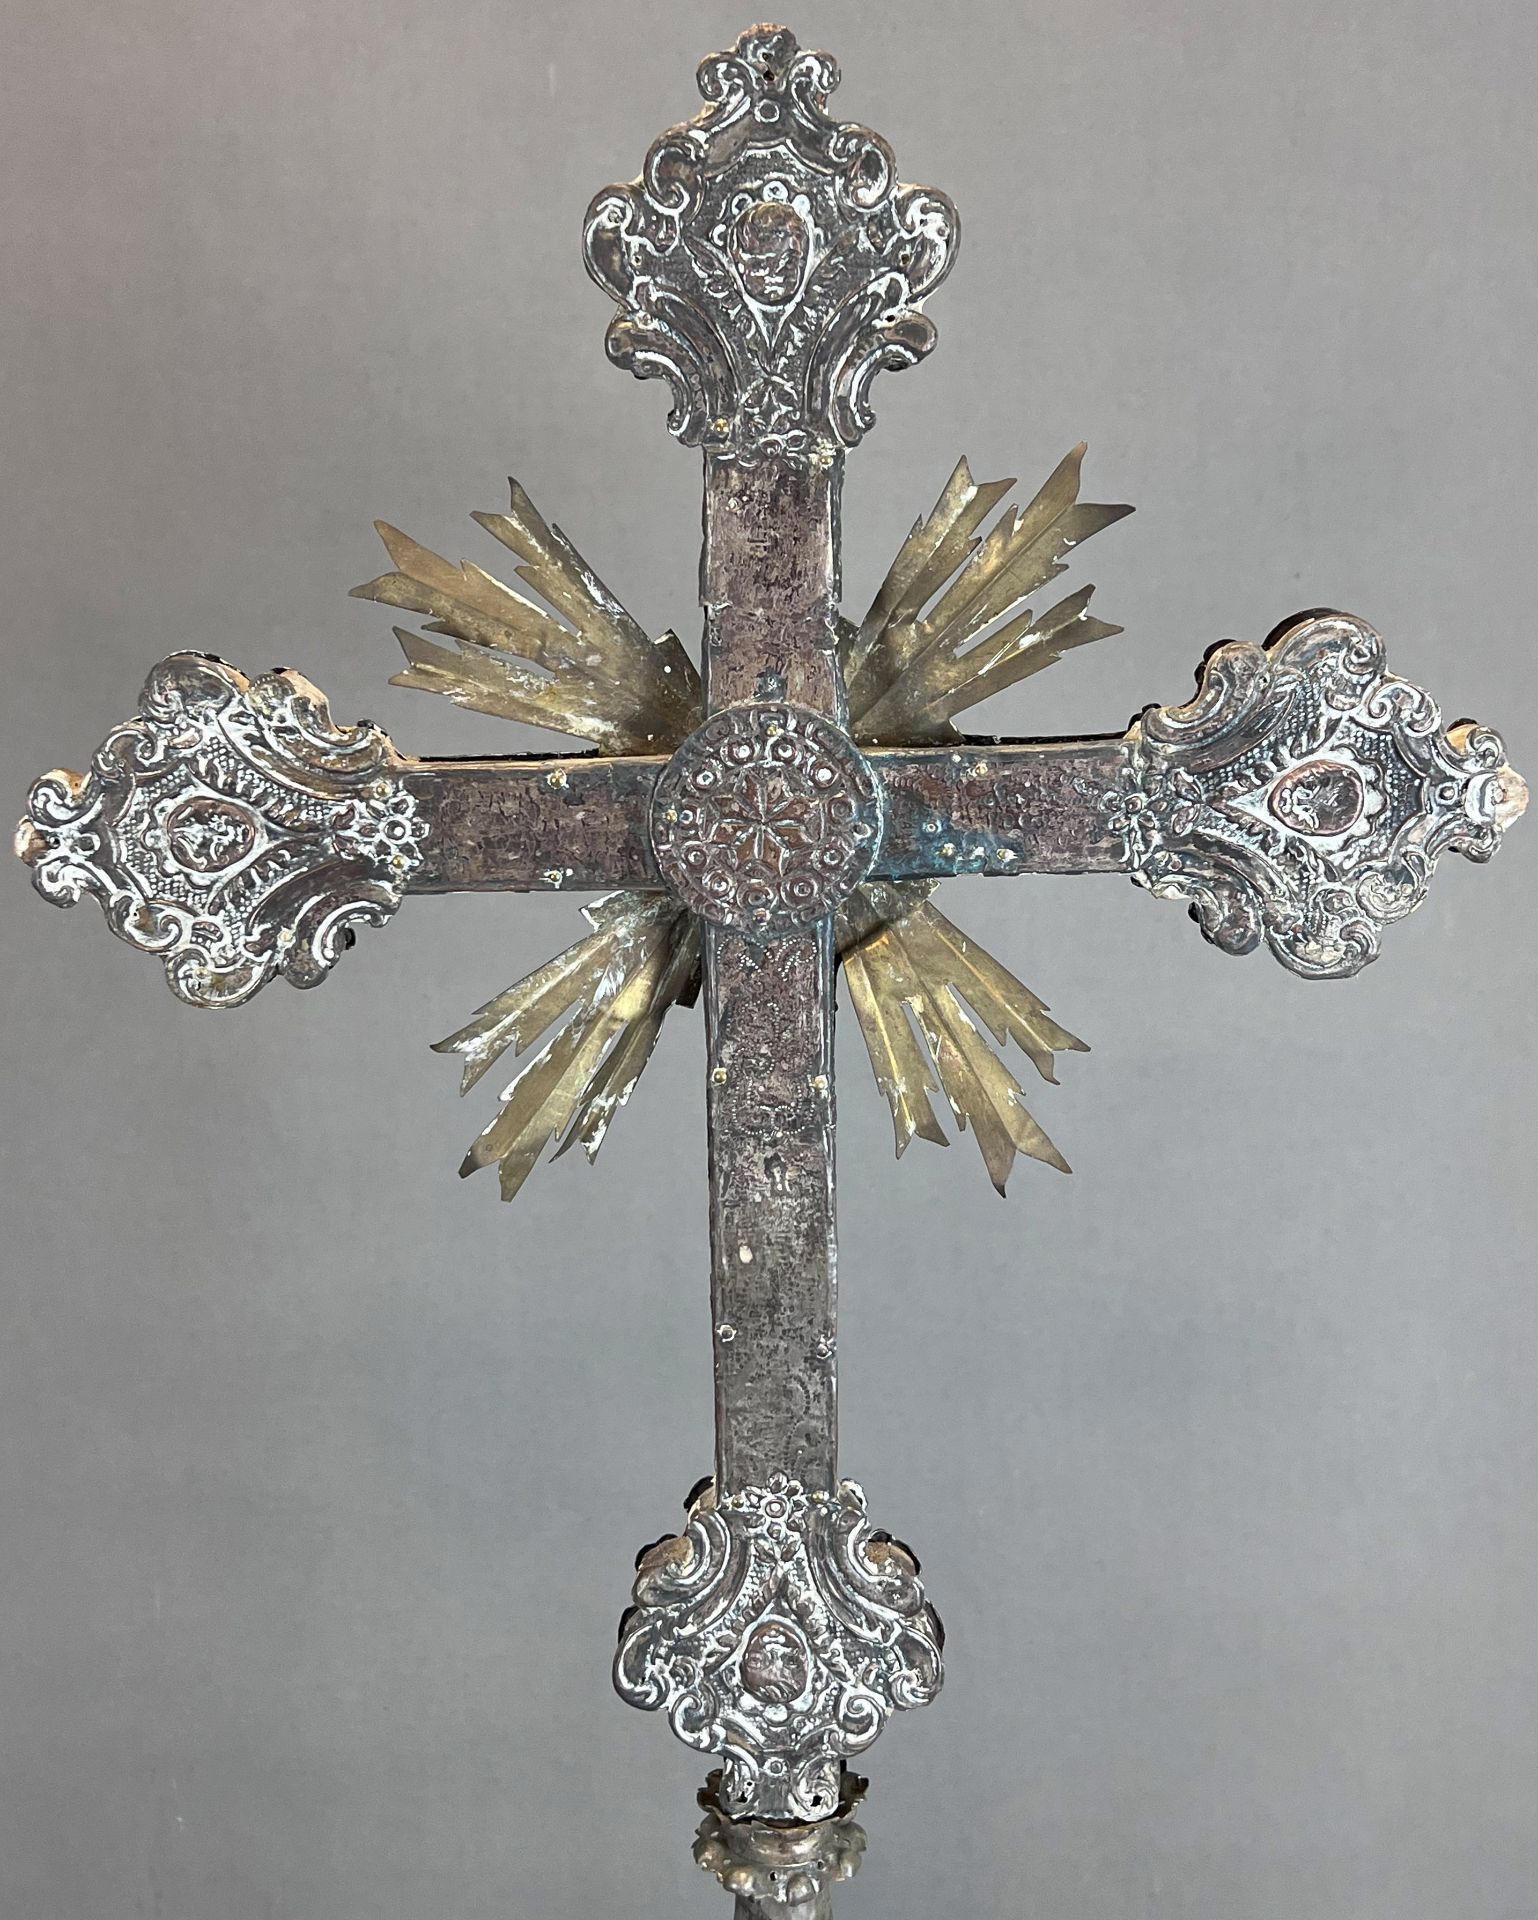 Großes Standkreuz. Altarkreuz. Um 1700. Frankreich. - Bild 9 aus 16